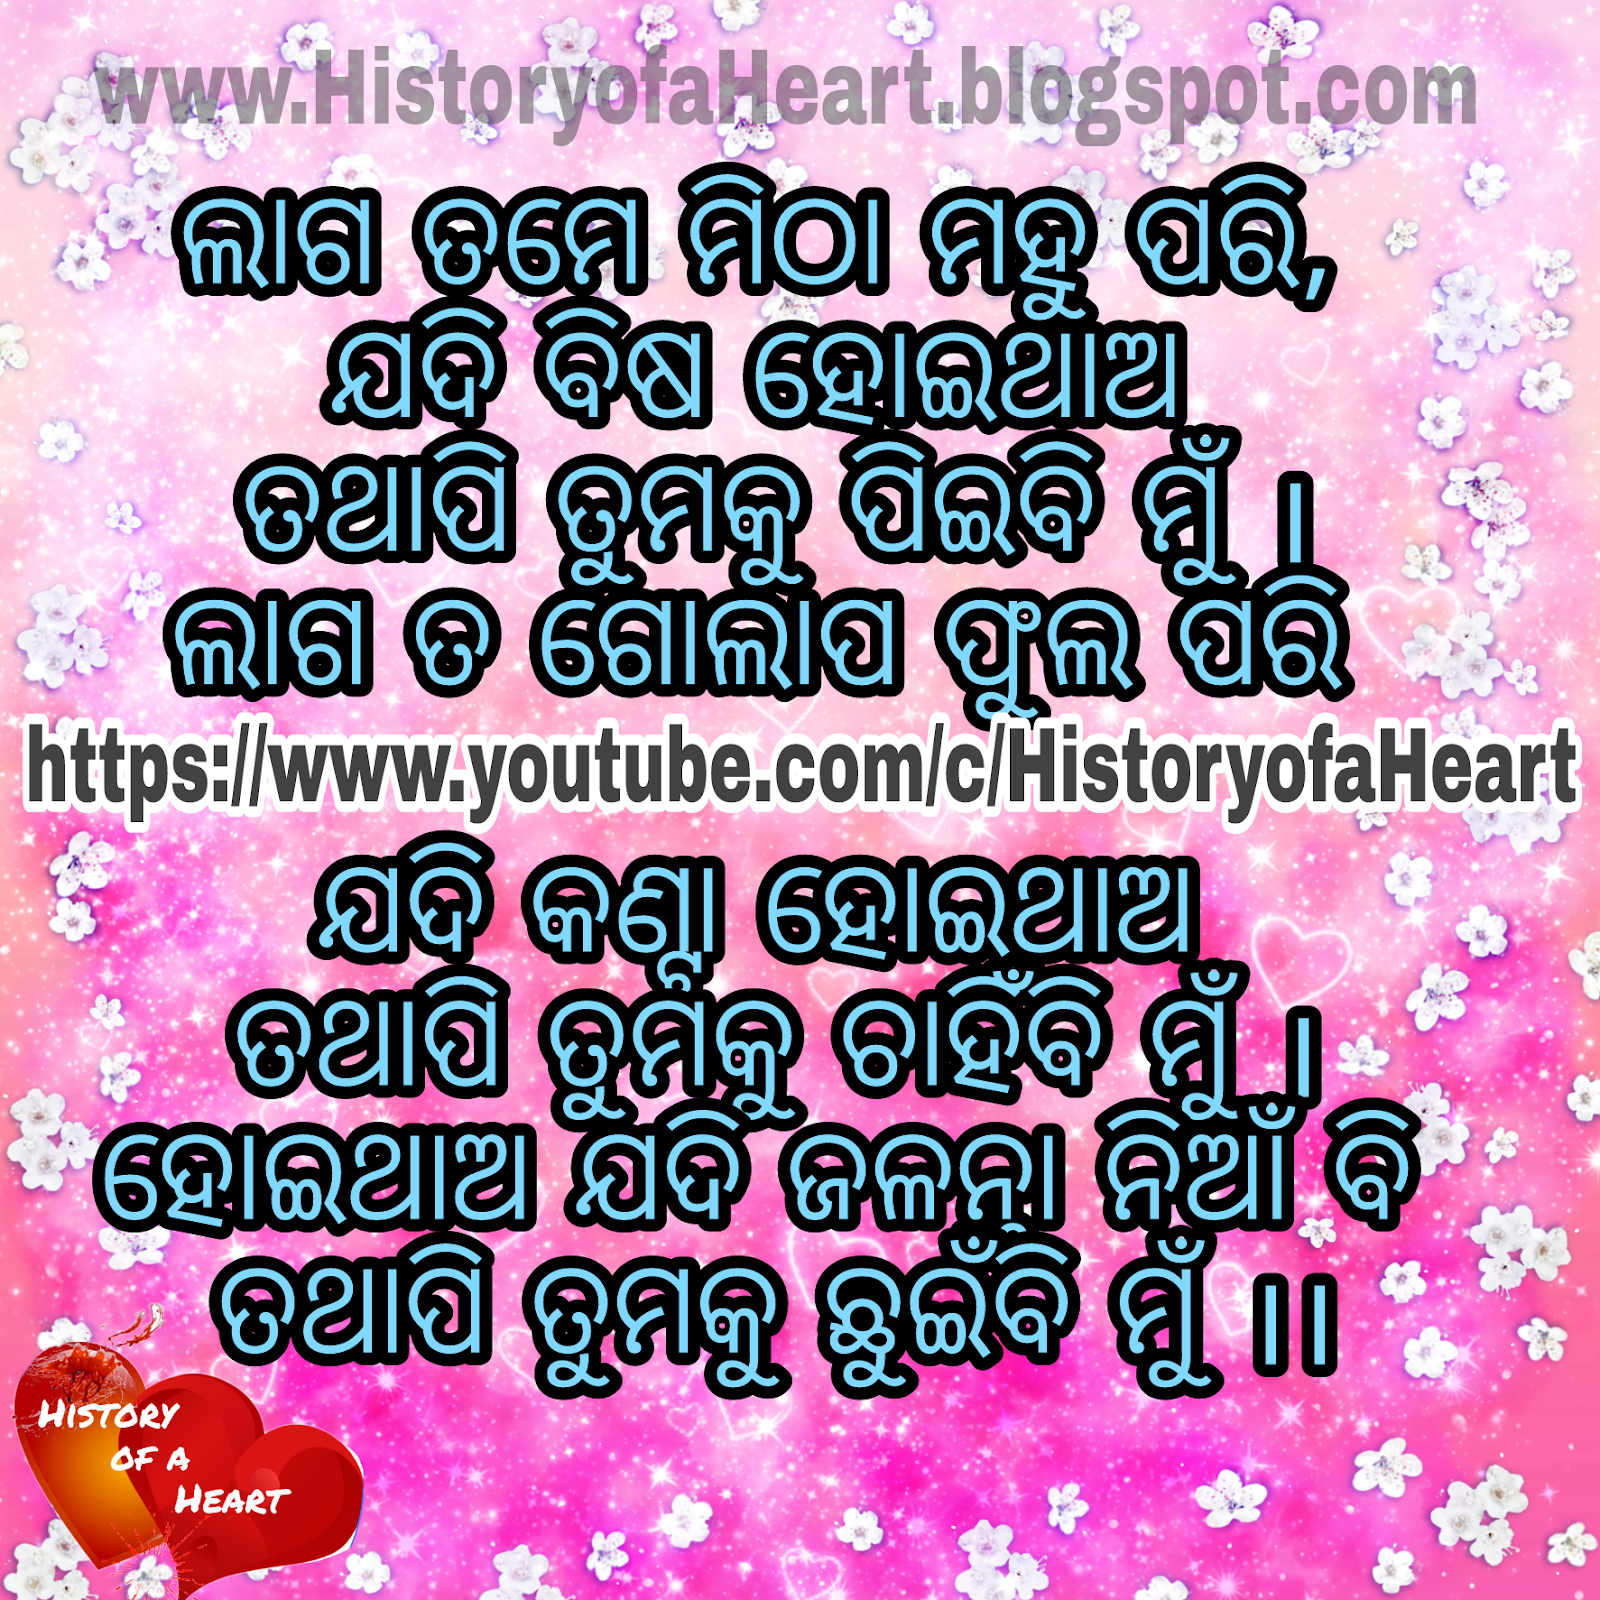 History Of A Heart Odia Shayari Image Romantic Sad Dhoka Odia